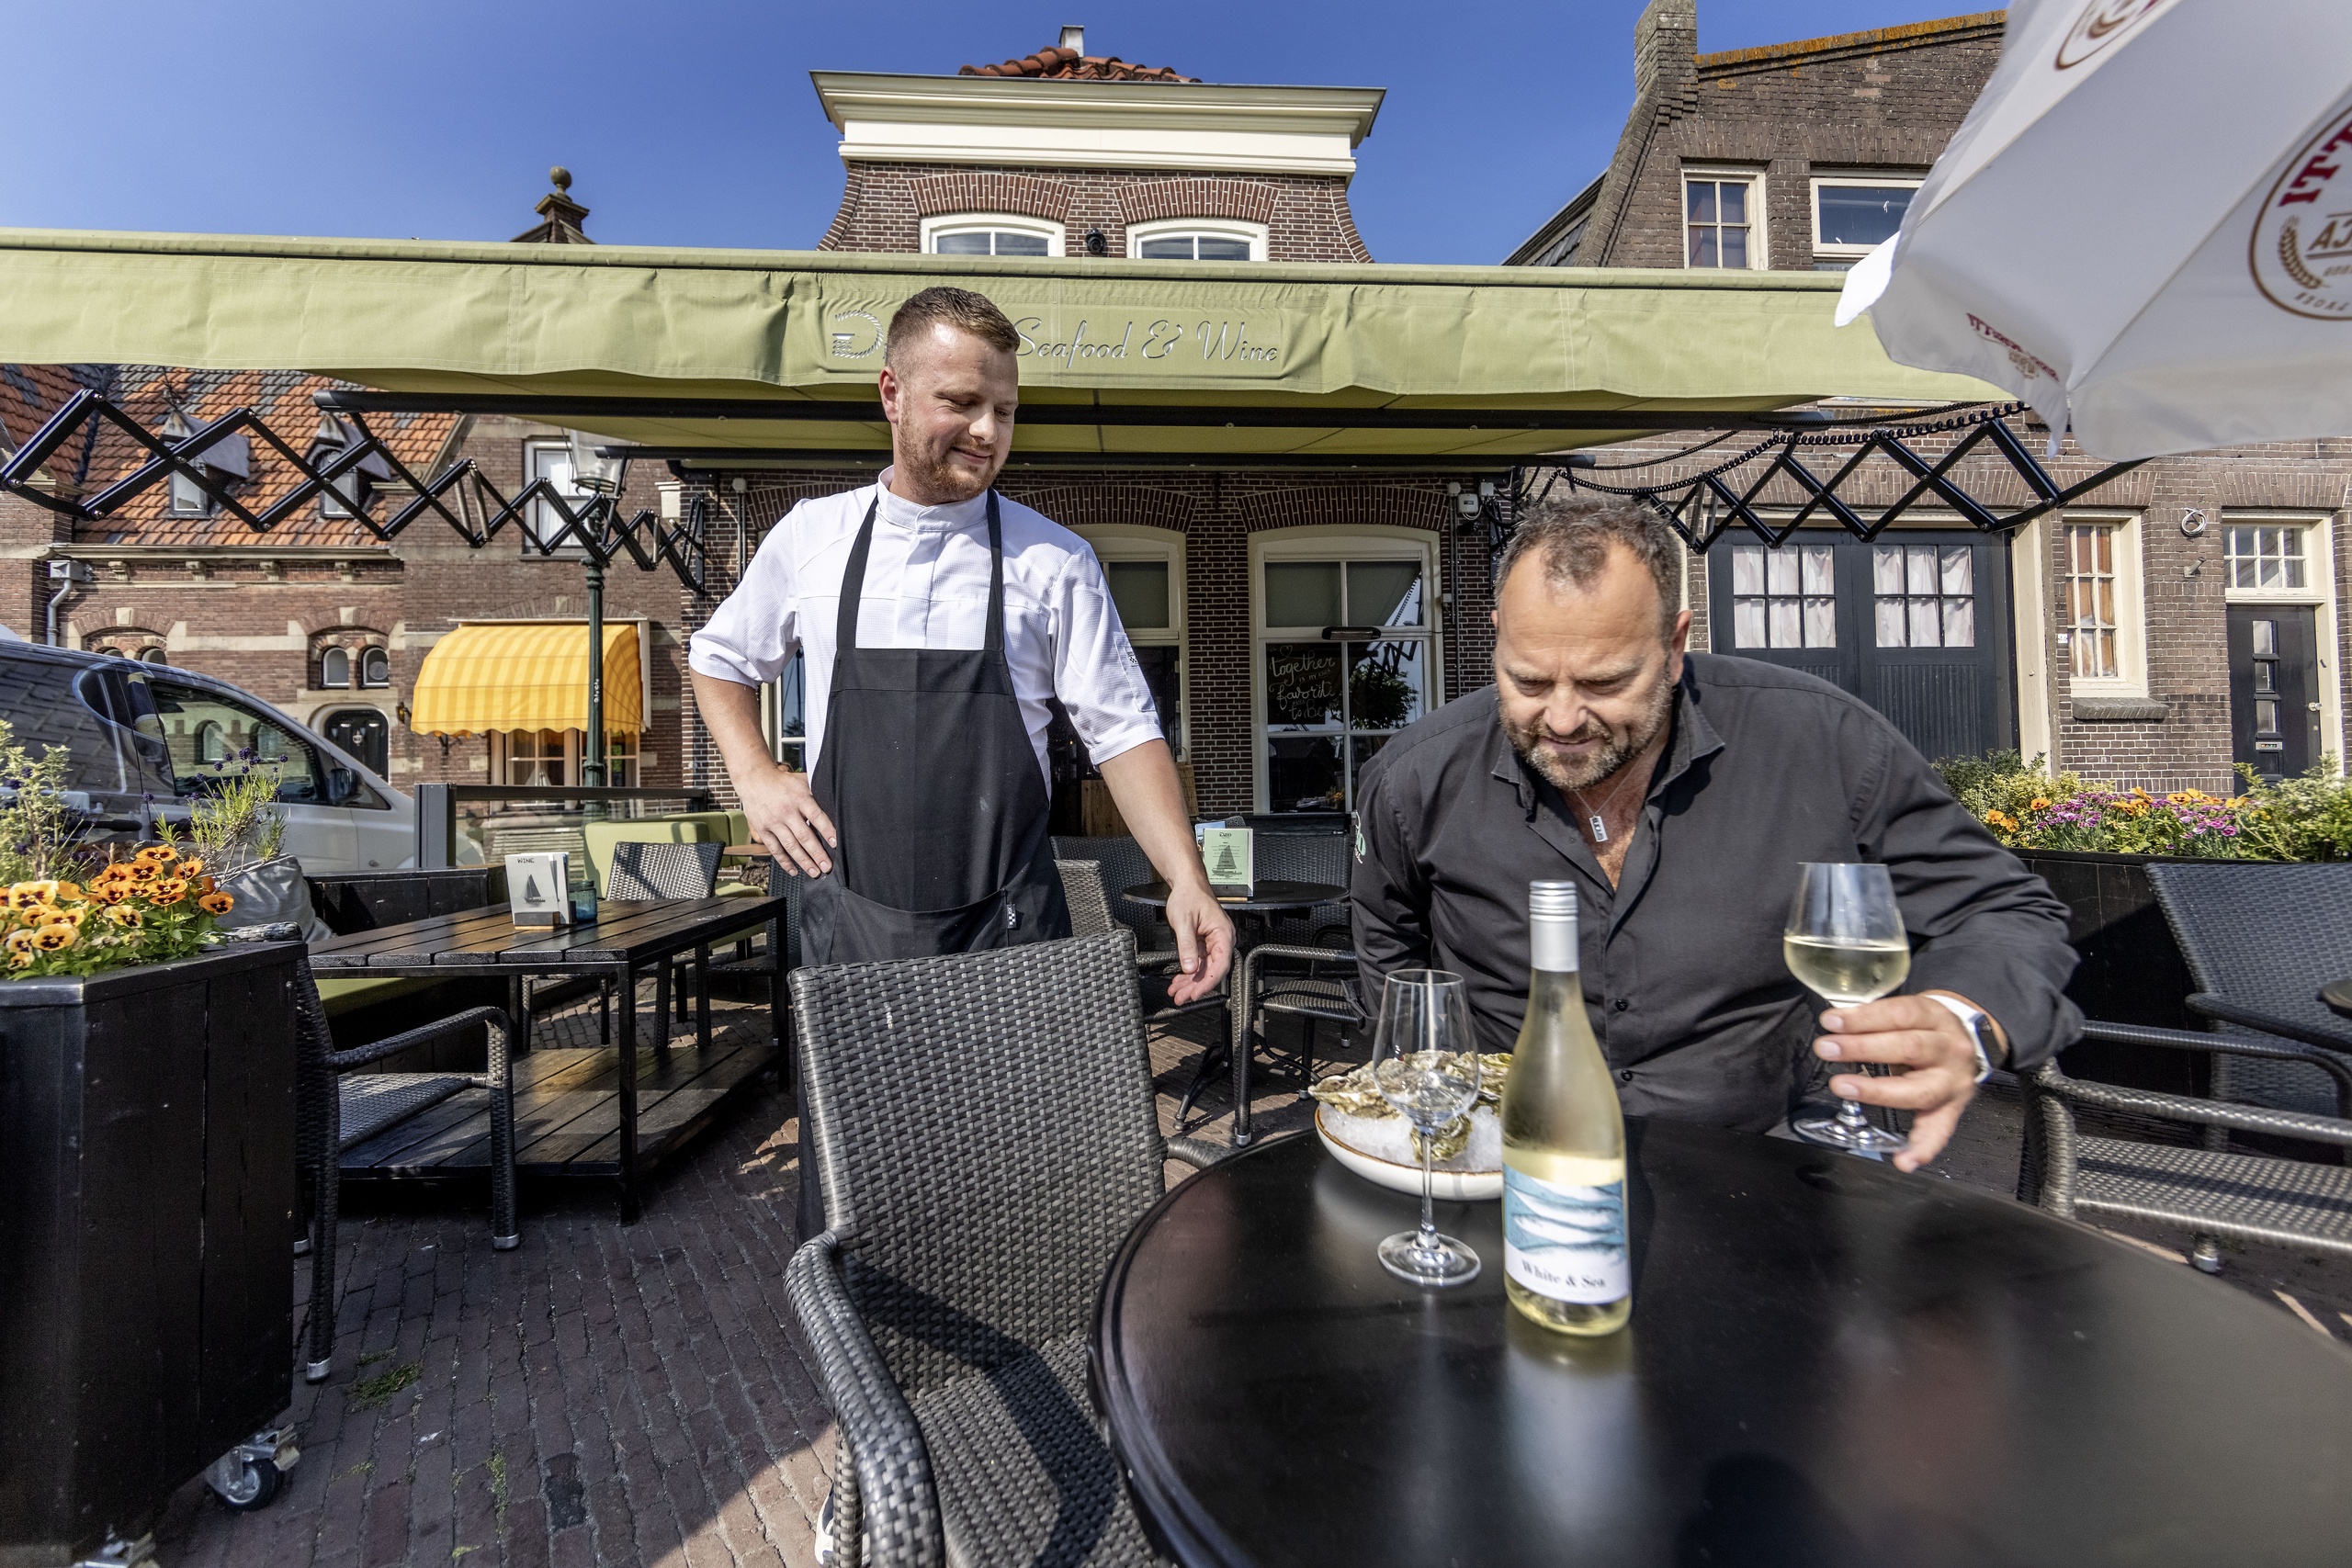 Horeca-ondernemer Jacco Schilder van De 80 Seafood & Wine in Enkhuizen kon niet genoeg arbeidskrachten vinden en heeft daarom maar besloten om zijn terras fors te verkleinen.